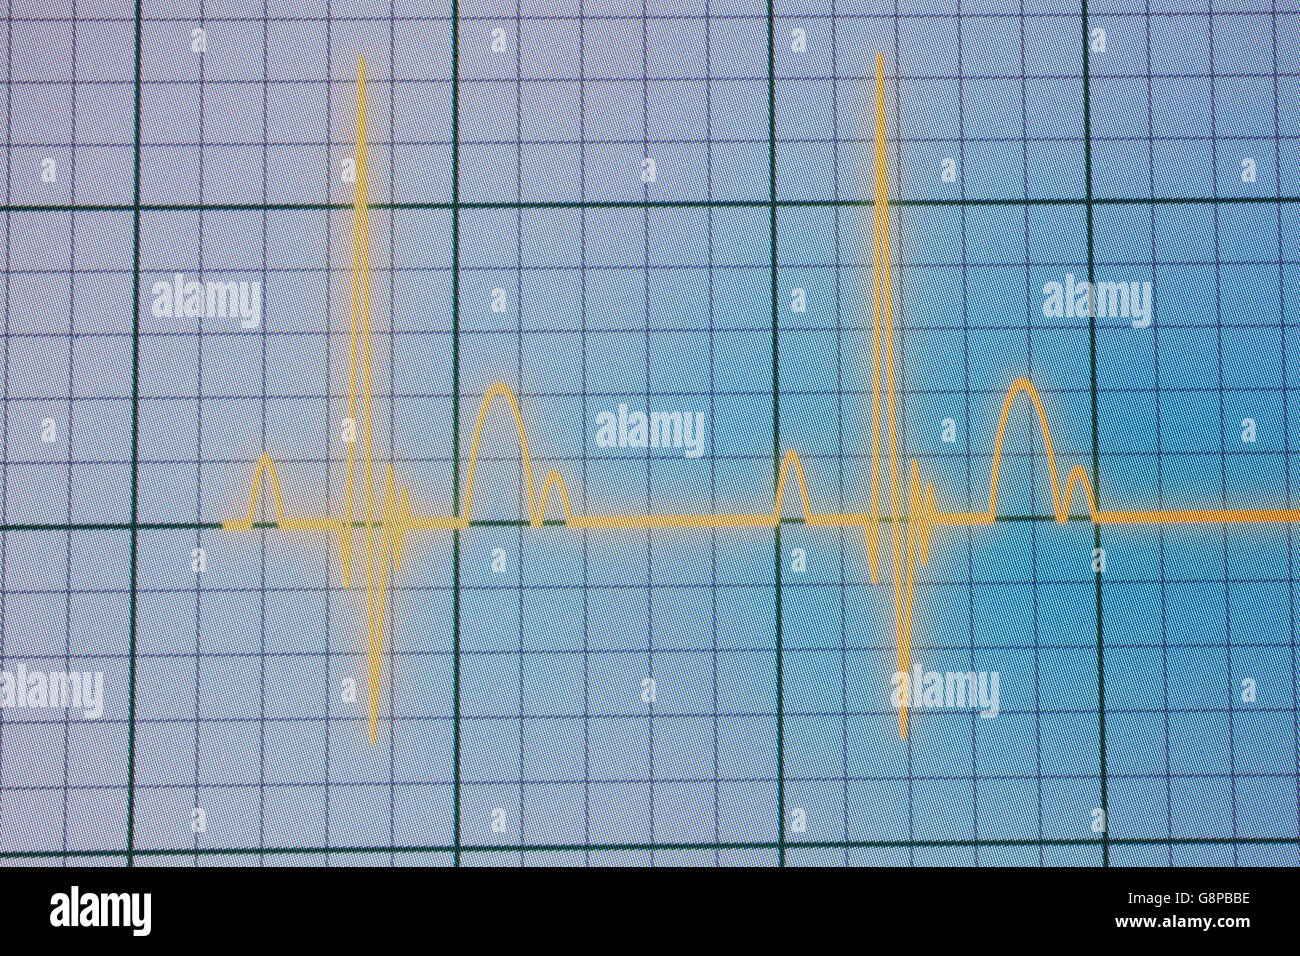 Flatline Ausrutscher auf einer medizinischen Herzmonitor ECG / EKG (Elektrokardiogramm) mit blauem Hintergrund Stockfoto